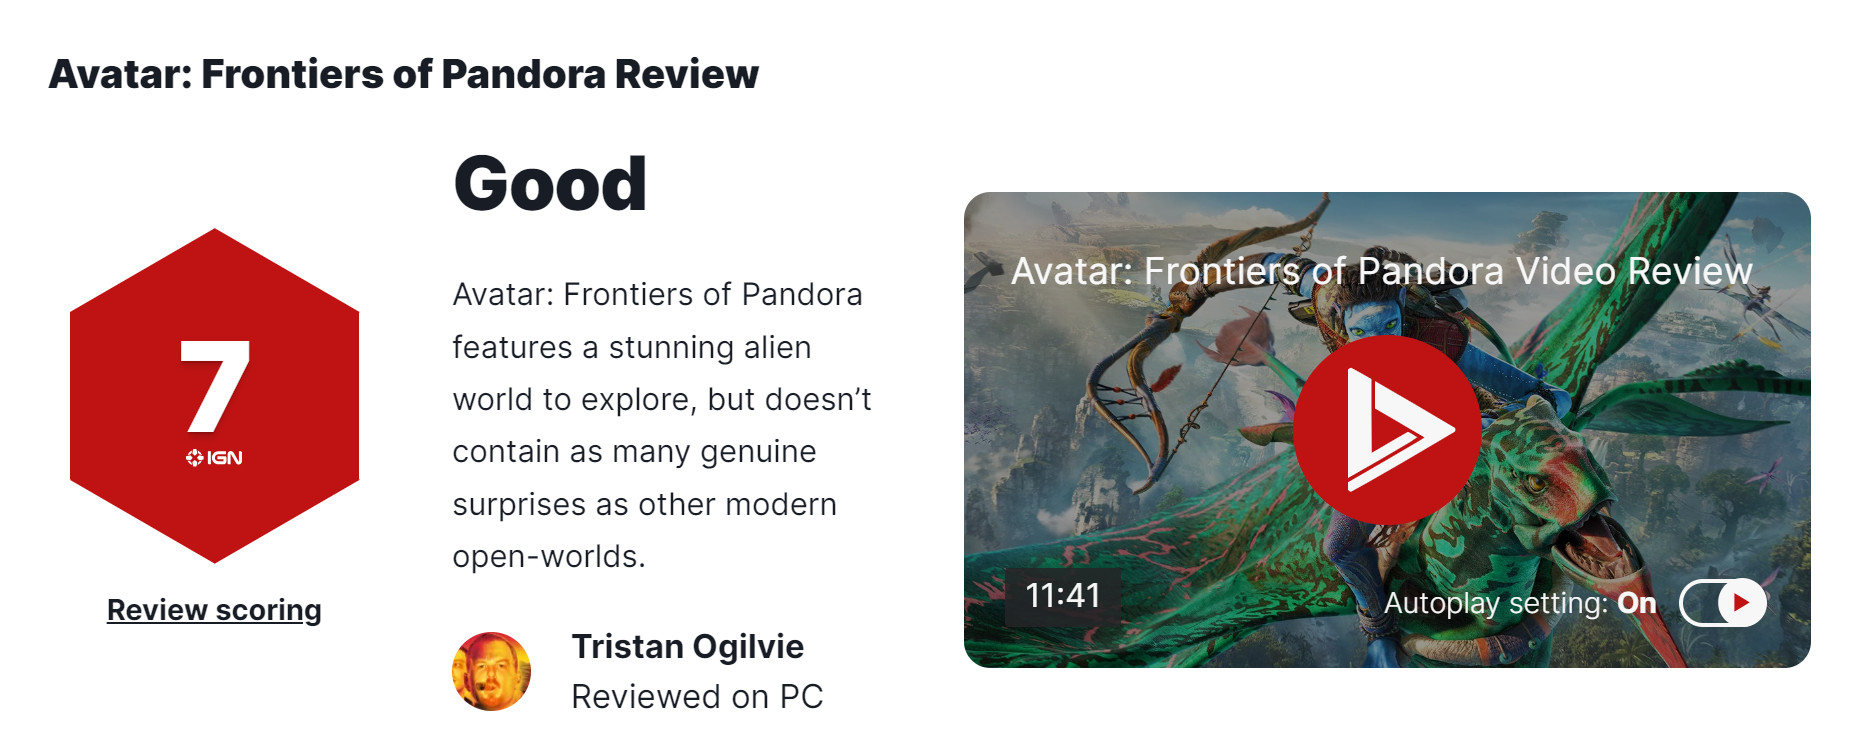 《阿凡達:潘多拉邊境》媒躰評分解禁,IGN給出7分